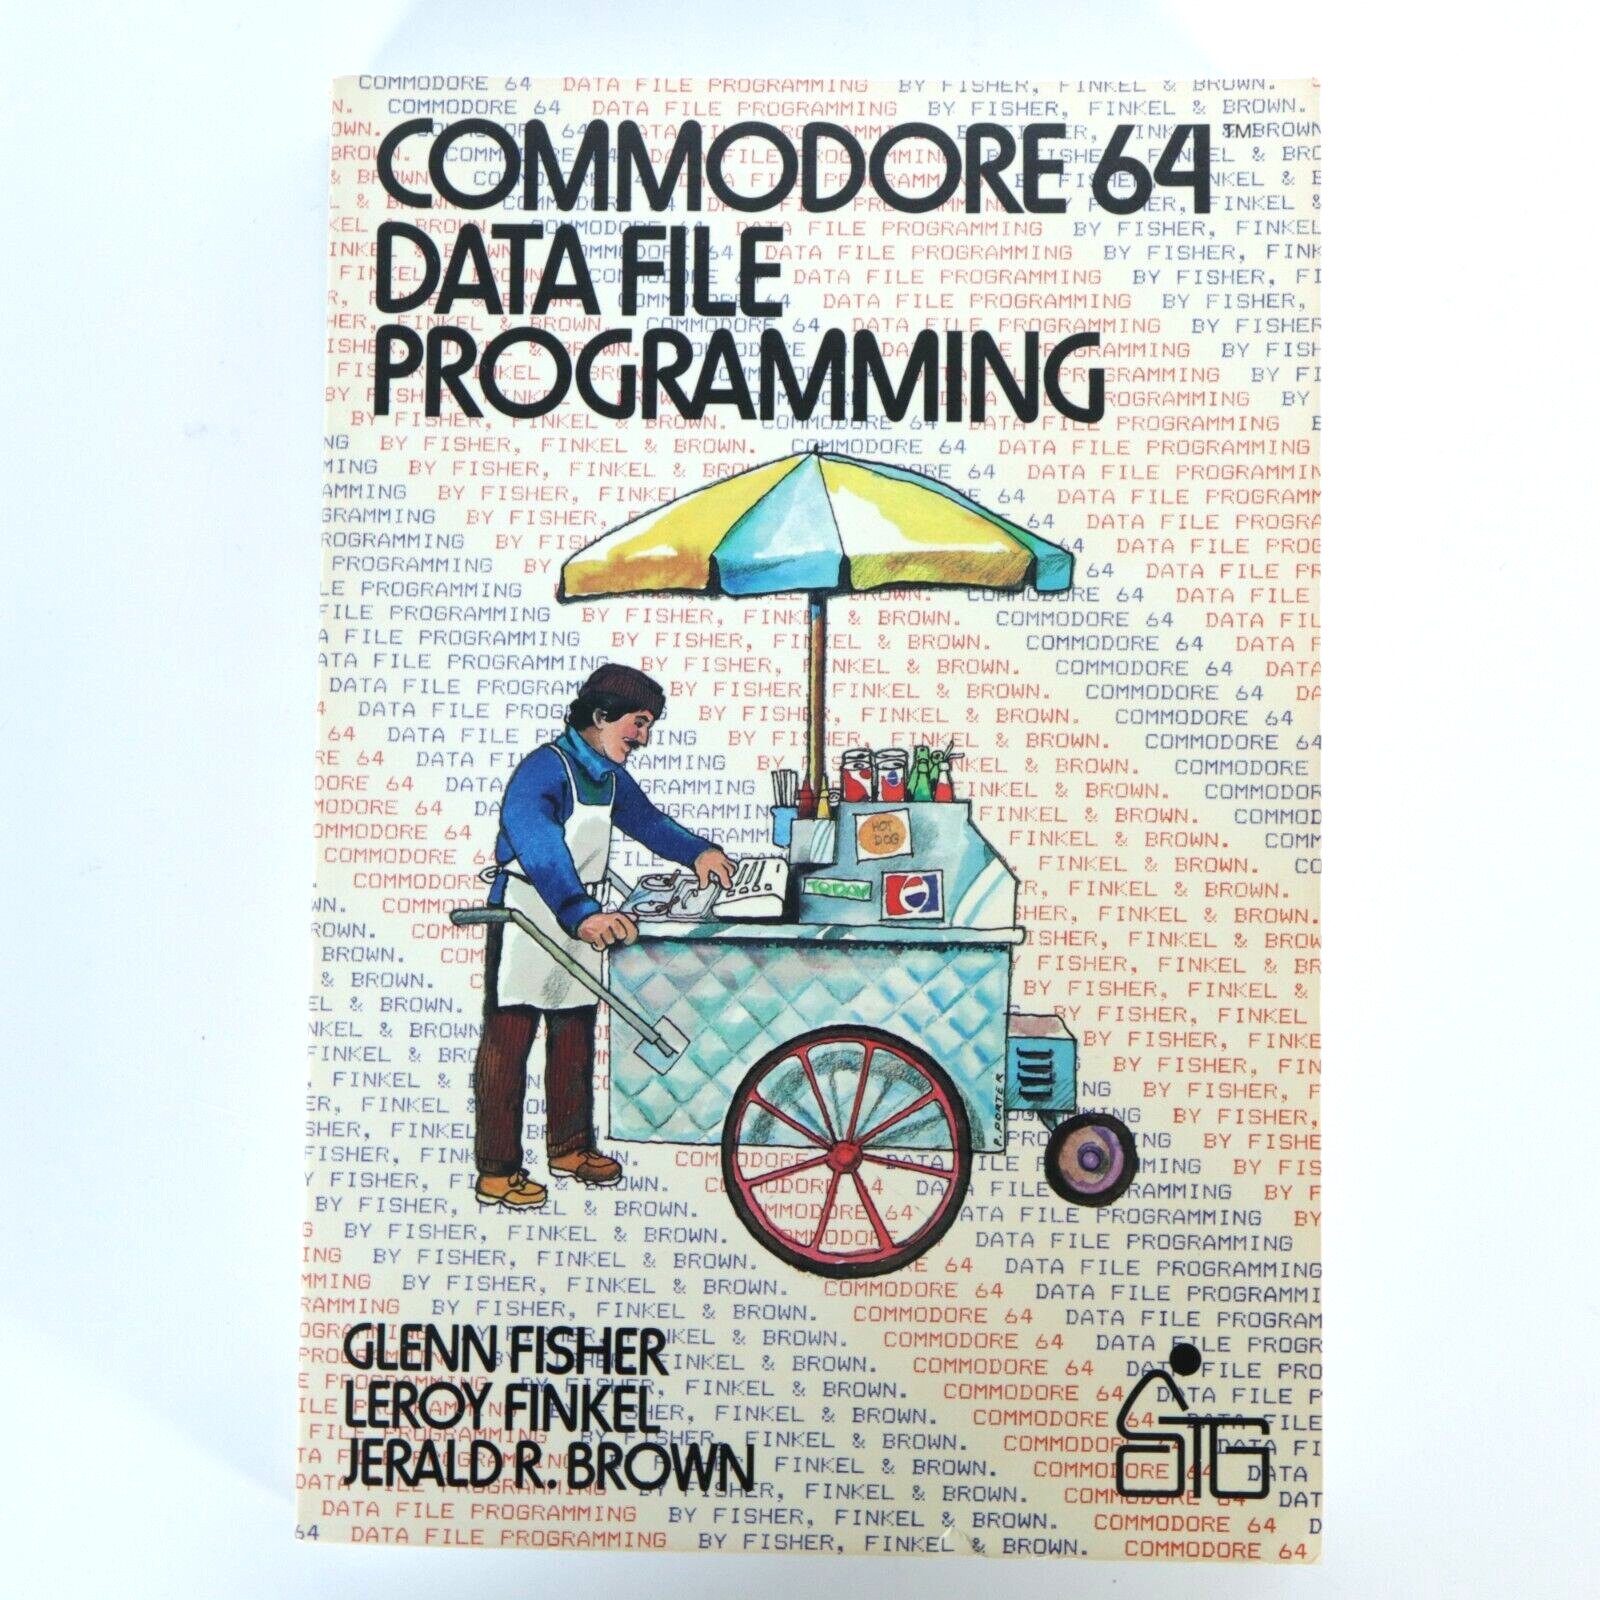 Commodore 64 Data File Programming 1985